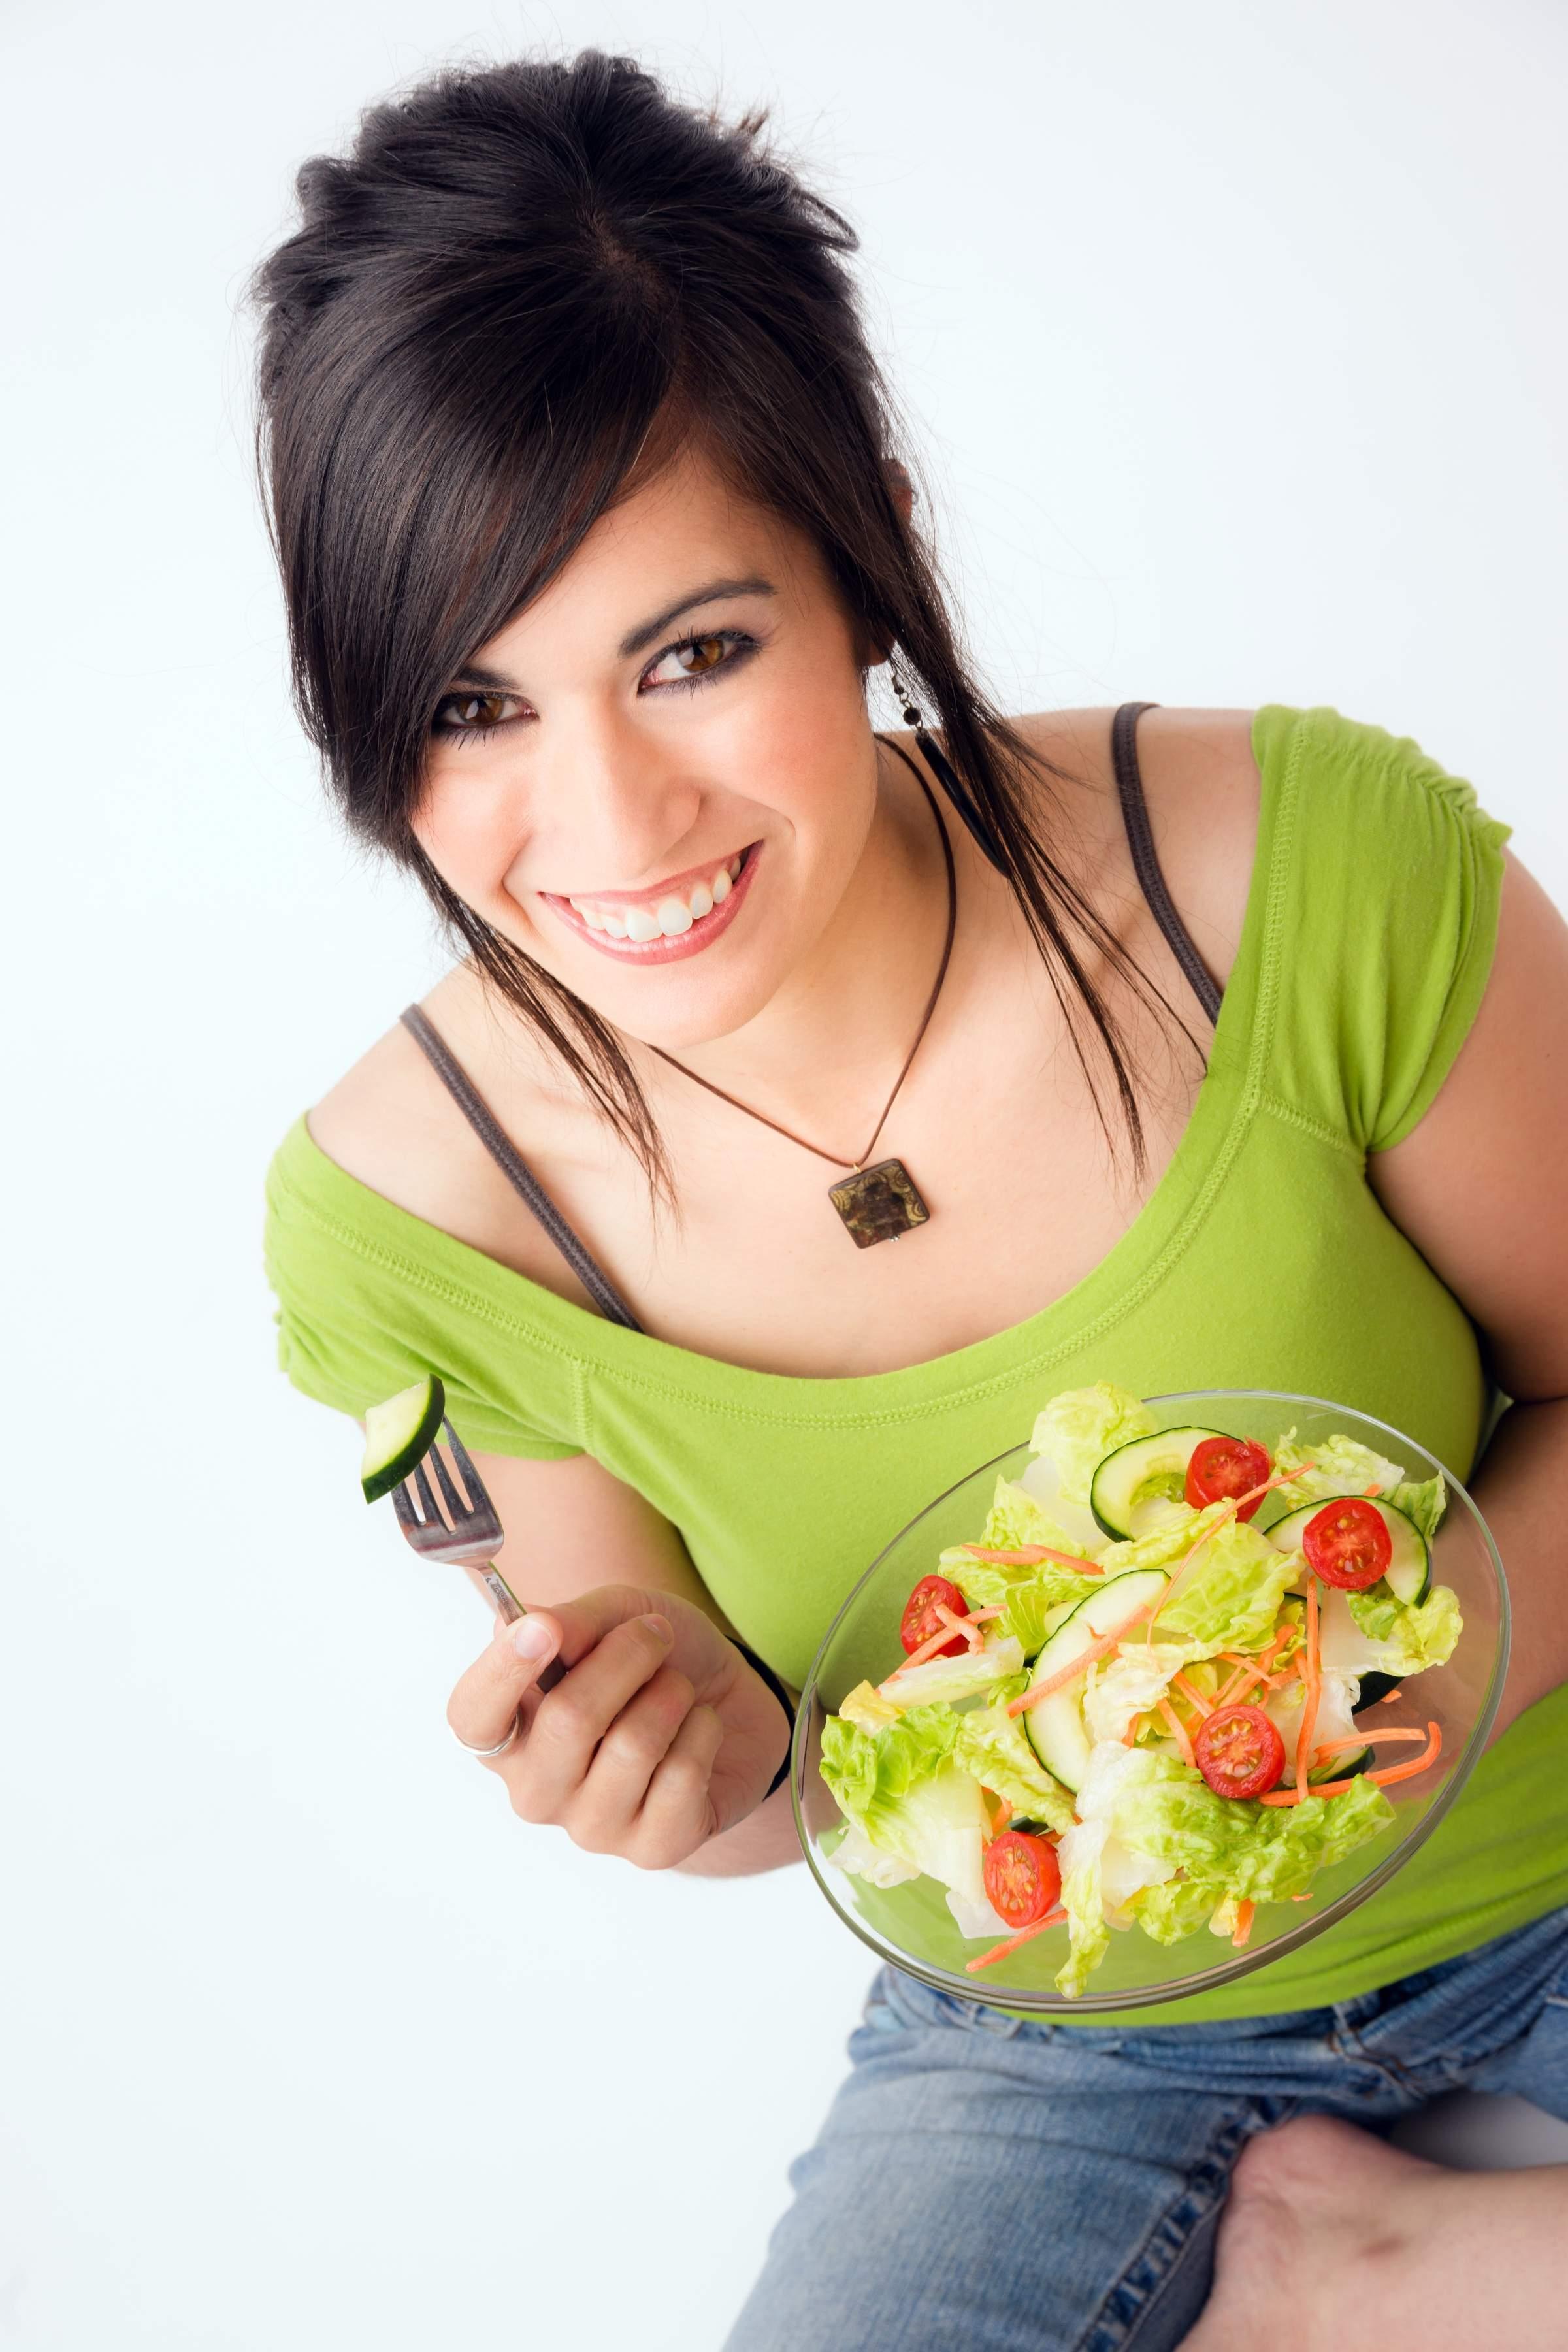 Jednostavni trikovi za zdraviju ishranu: Nove navike balansiranja obroka